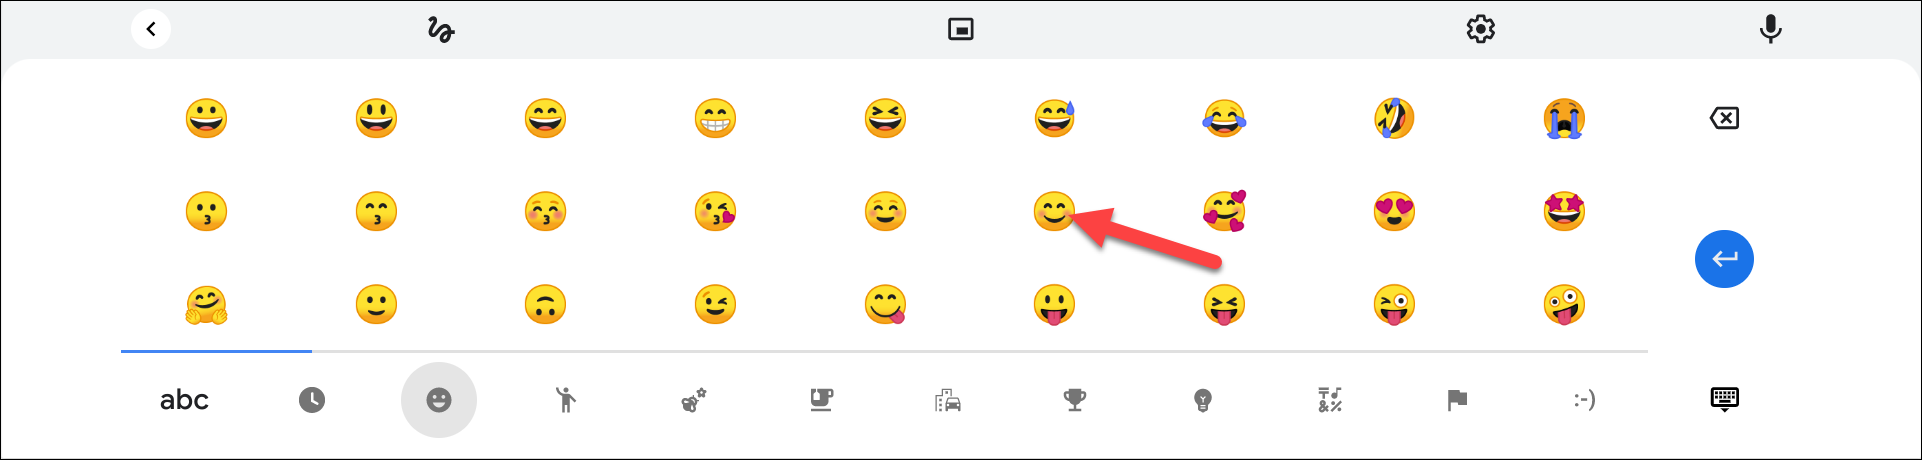 Seleccione un emoji del teclado virtual.